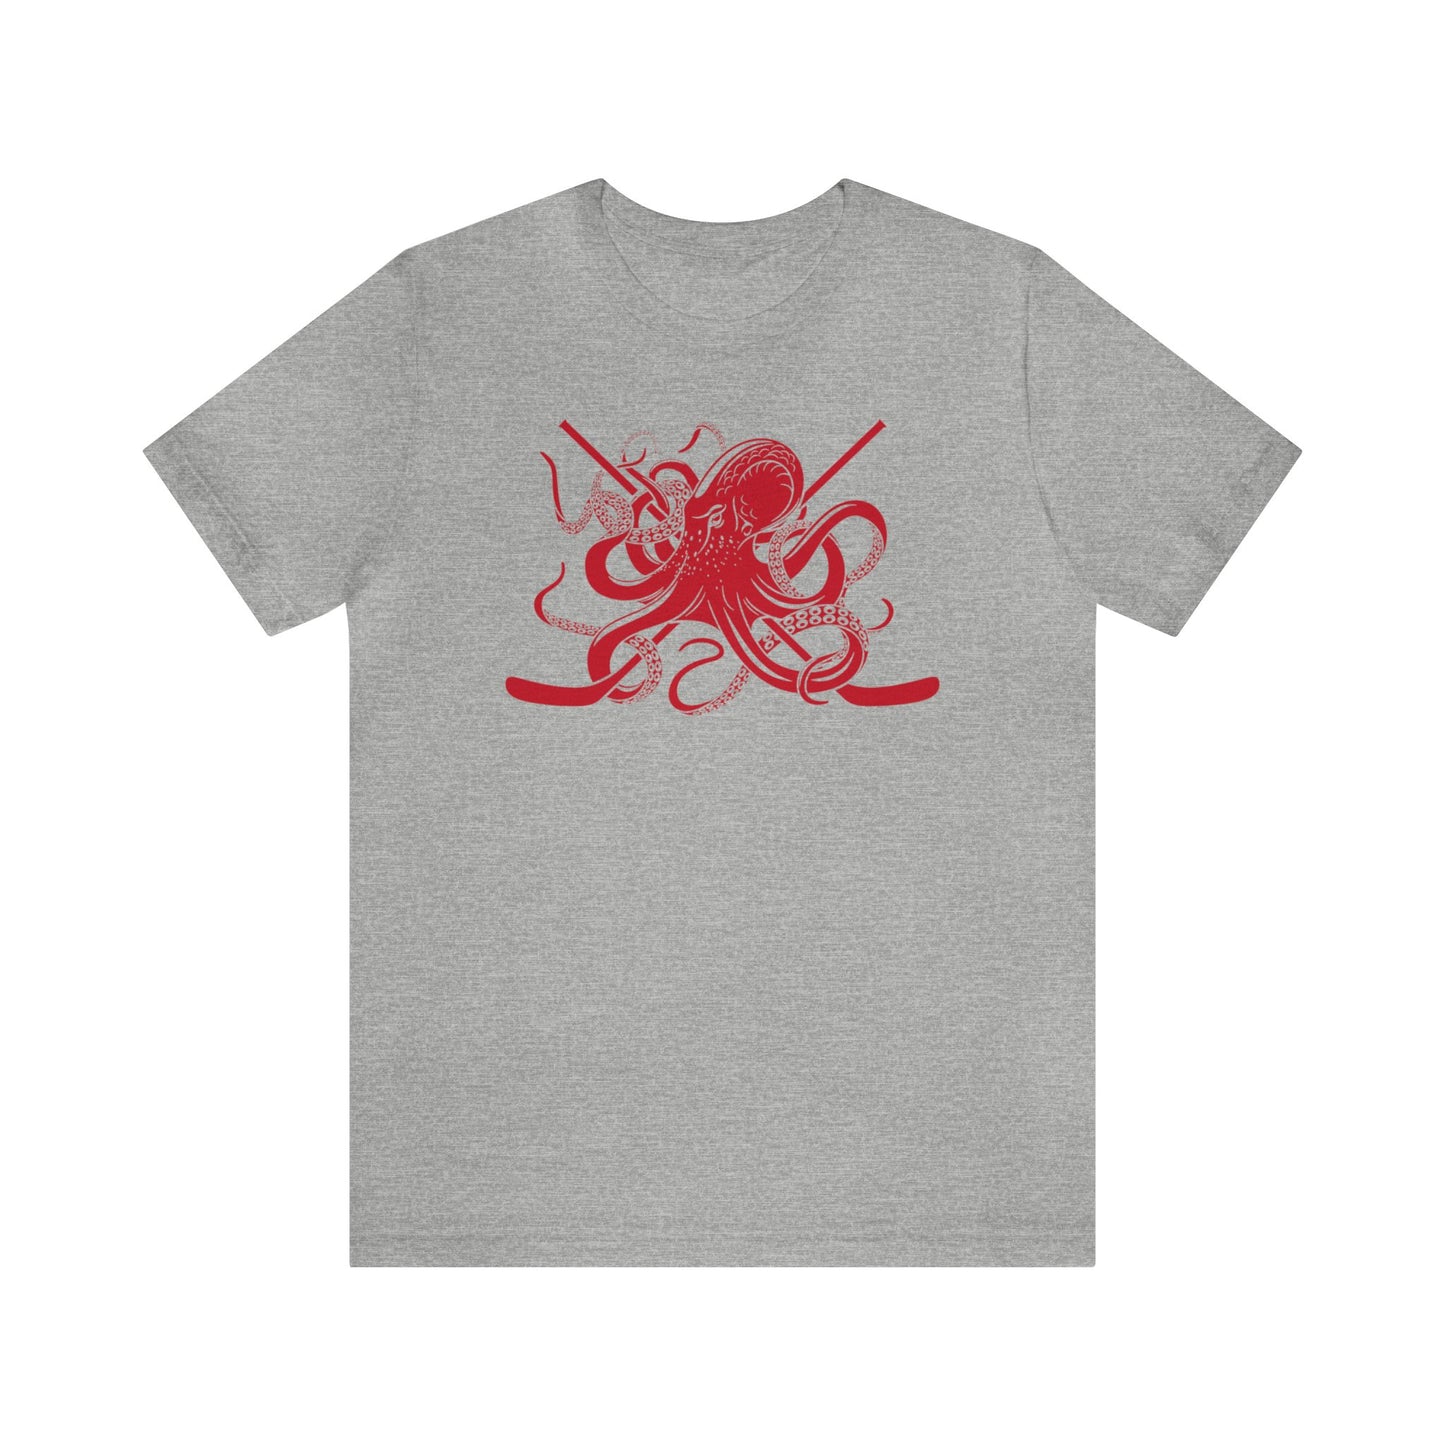 Detroit - Octopus Shirt